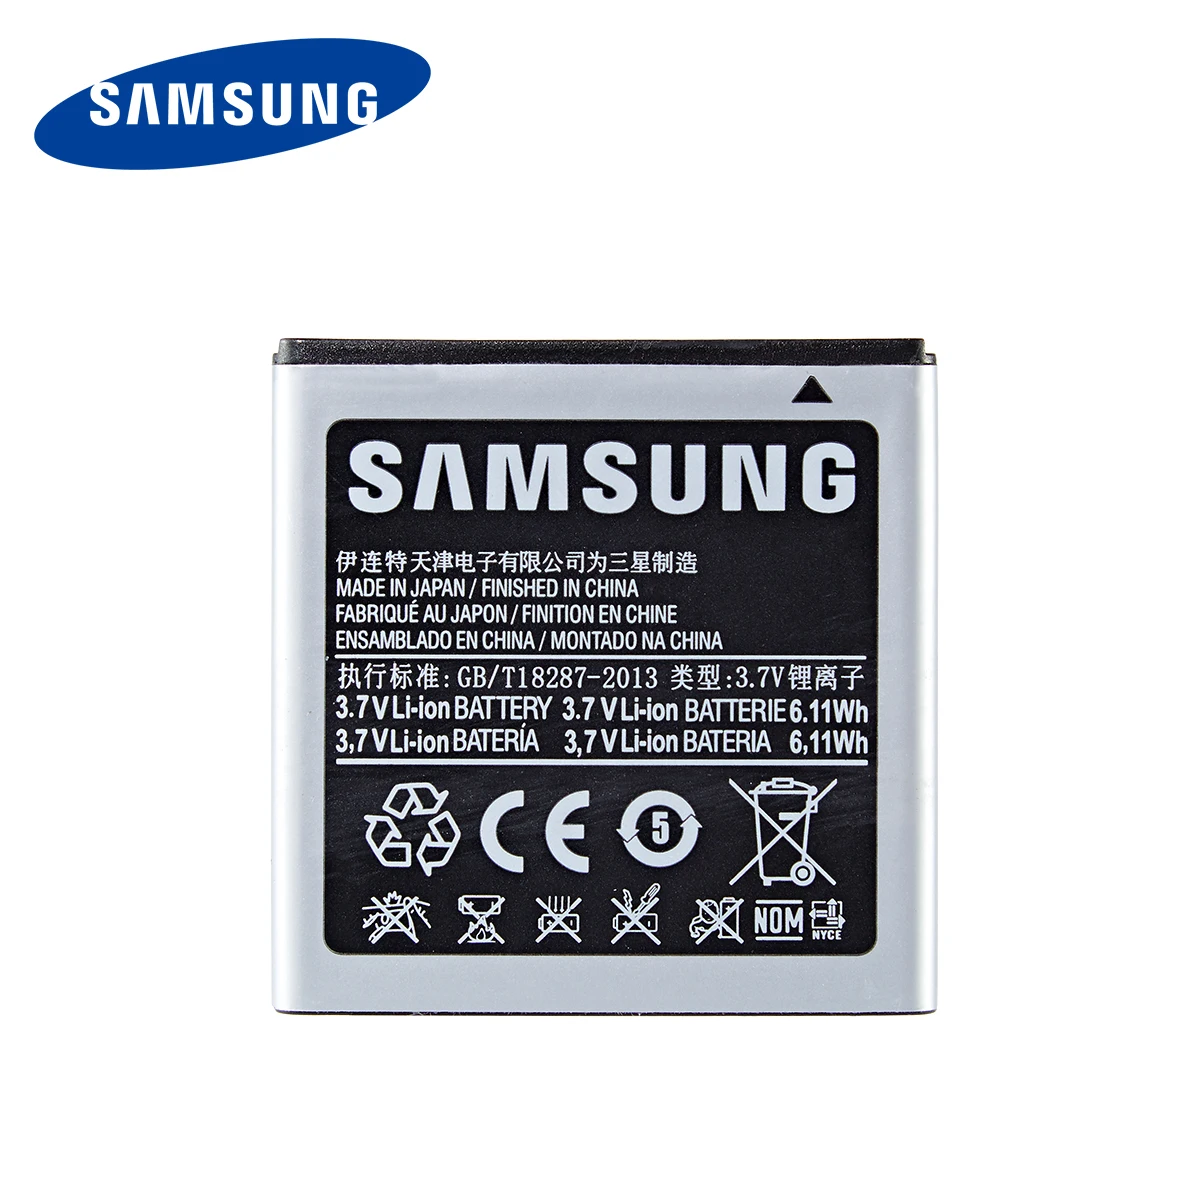 

SAMSUNG Orginal EB575152LU EB575152VA/VU Battery 1650mAh For Samsung Galaxy S I9000 I589 I8250 I919 D710 i9001 I9003 I779 i9105